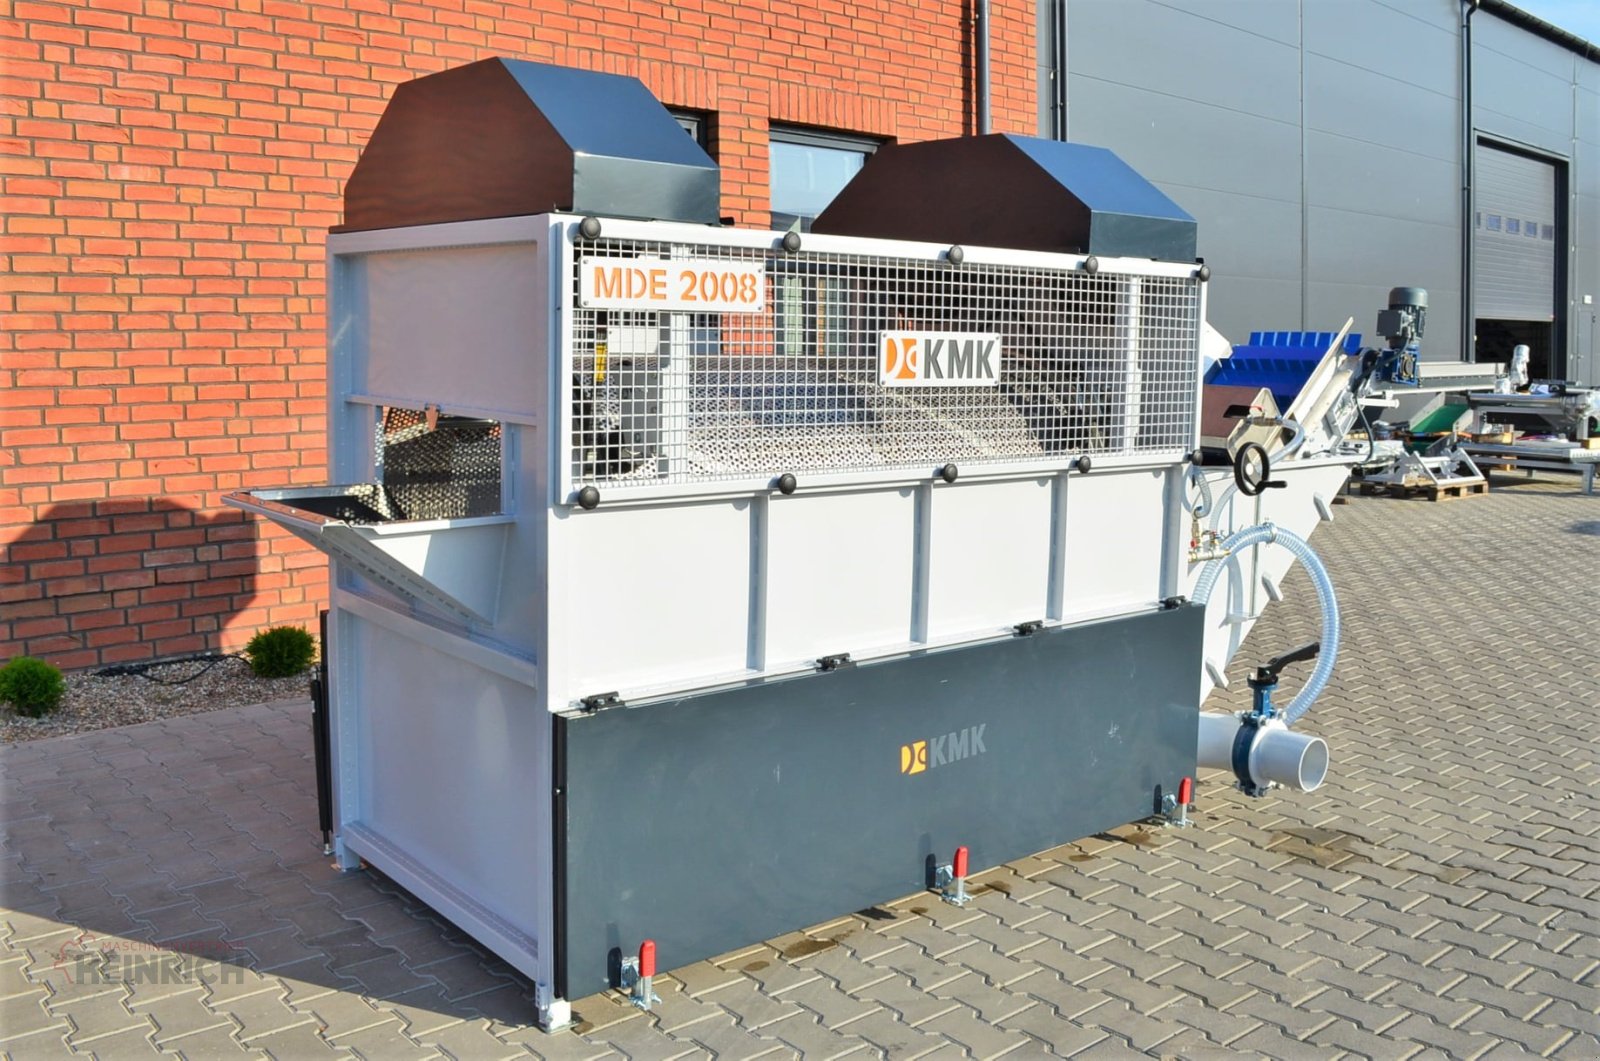 Sonstige Kartoffeltechnik des Typs KMK Trommelwaschmaschine MD2008 Kartoffel waschen, Waschmaschine, Neumaschine in Ehekirchen (Bild 2)